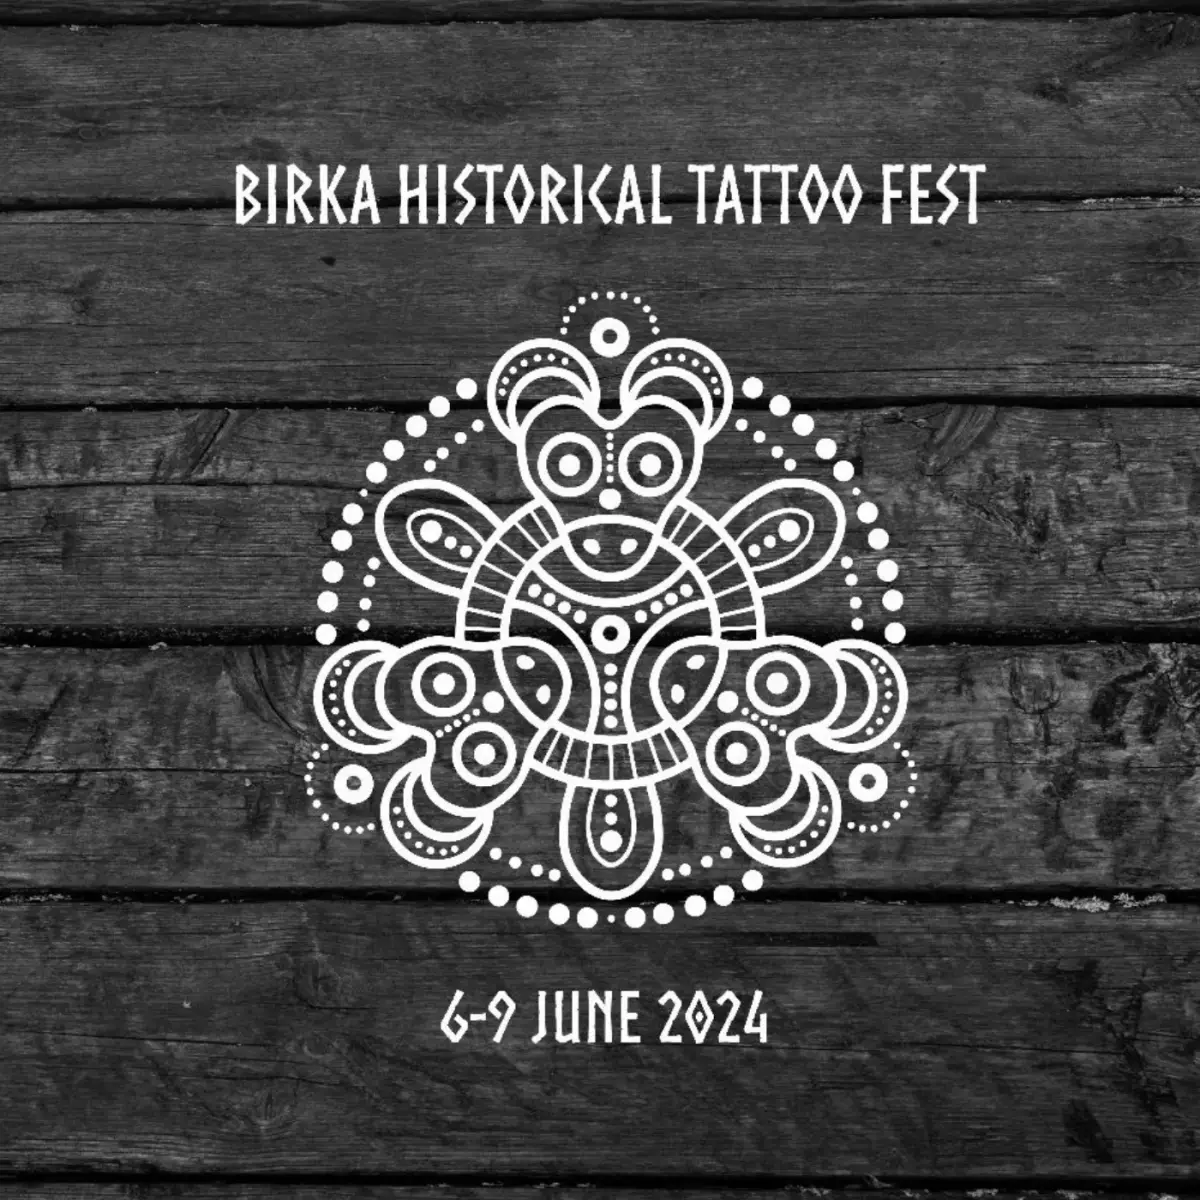 Birka Historical Tattoo Fest - Ancientskin